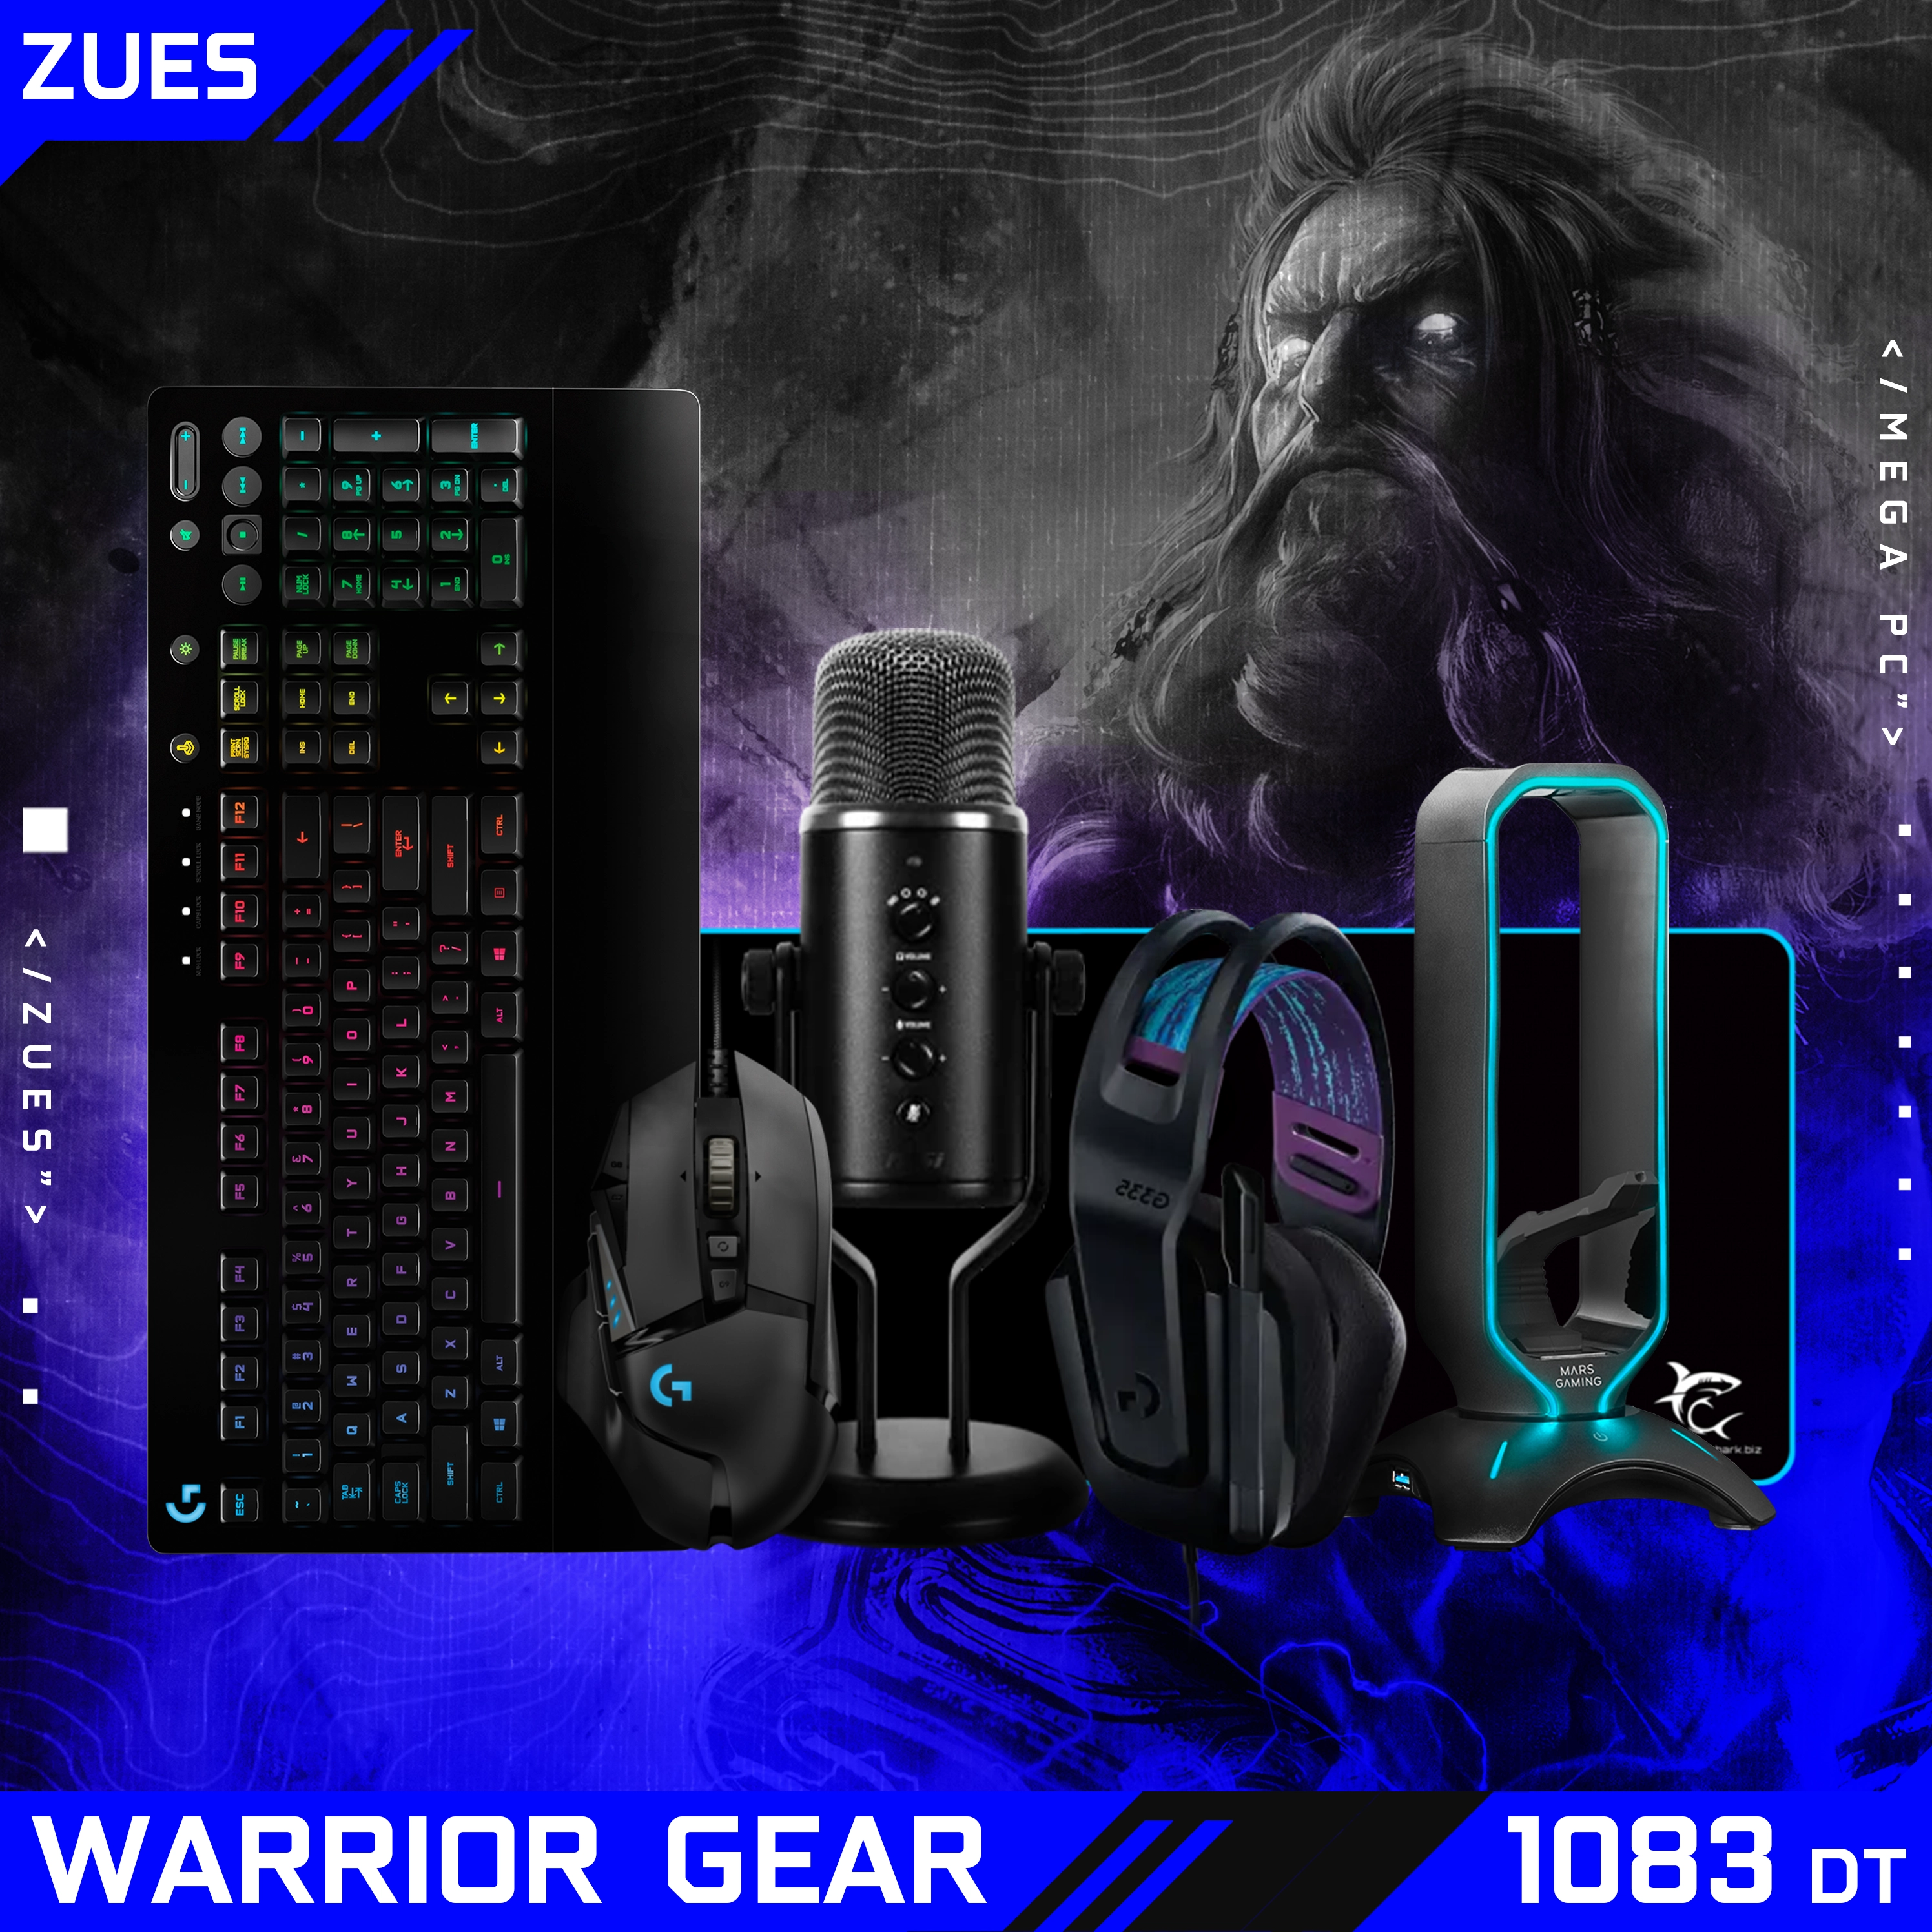 Warrior Gear: ZEUS